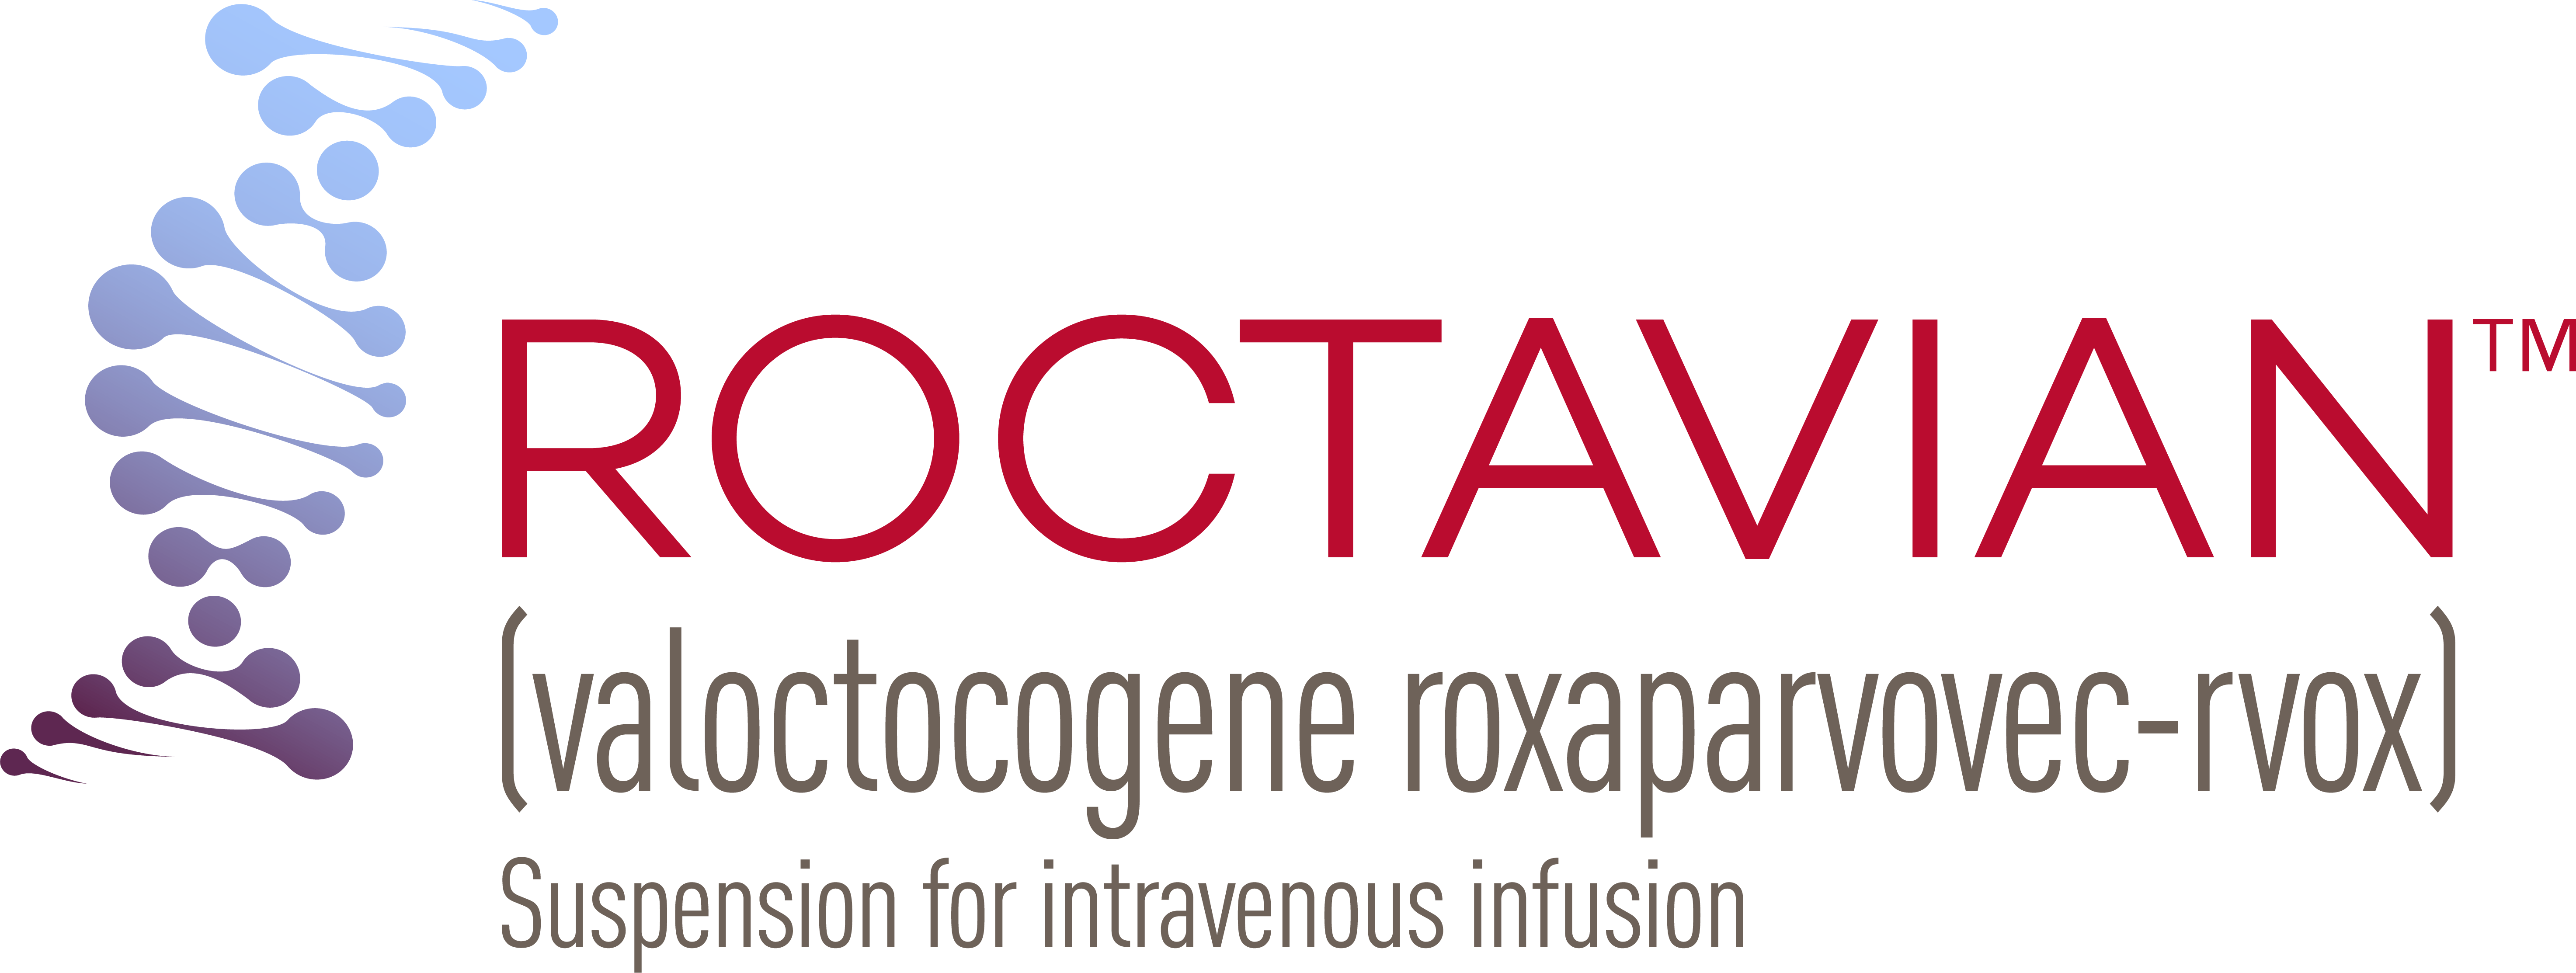 ROCTAVIAN™ (valoctocogene roxaparvovec-rvox) Logo